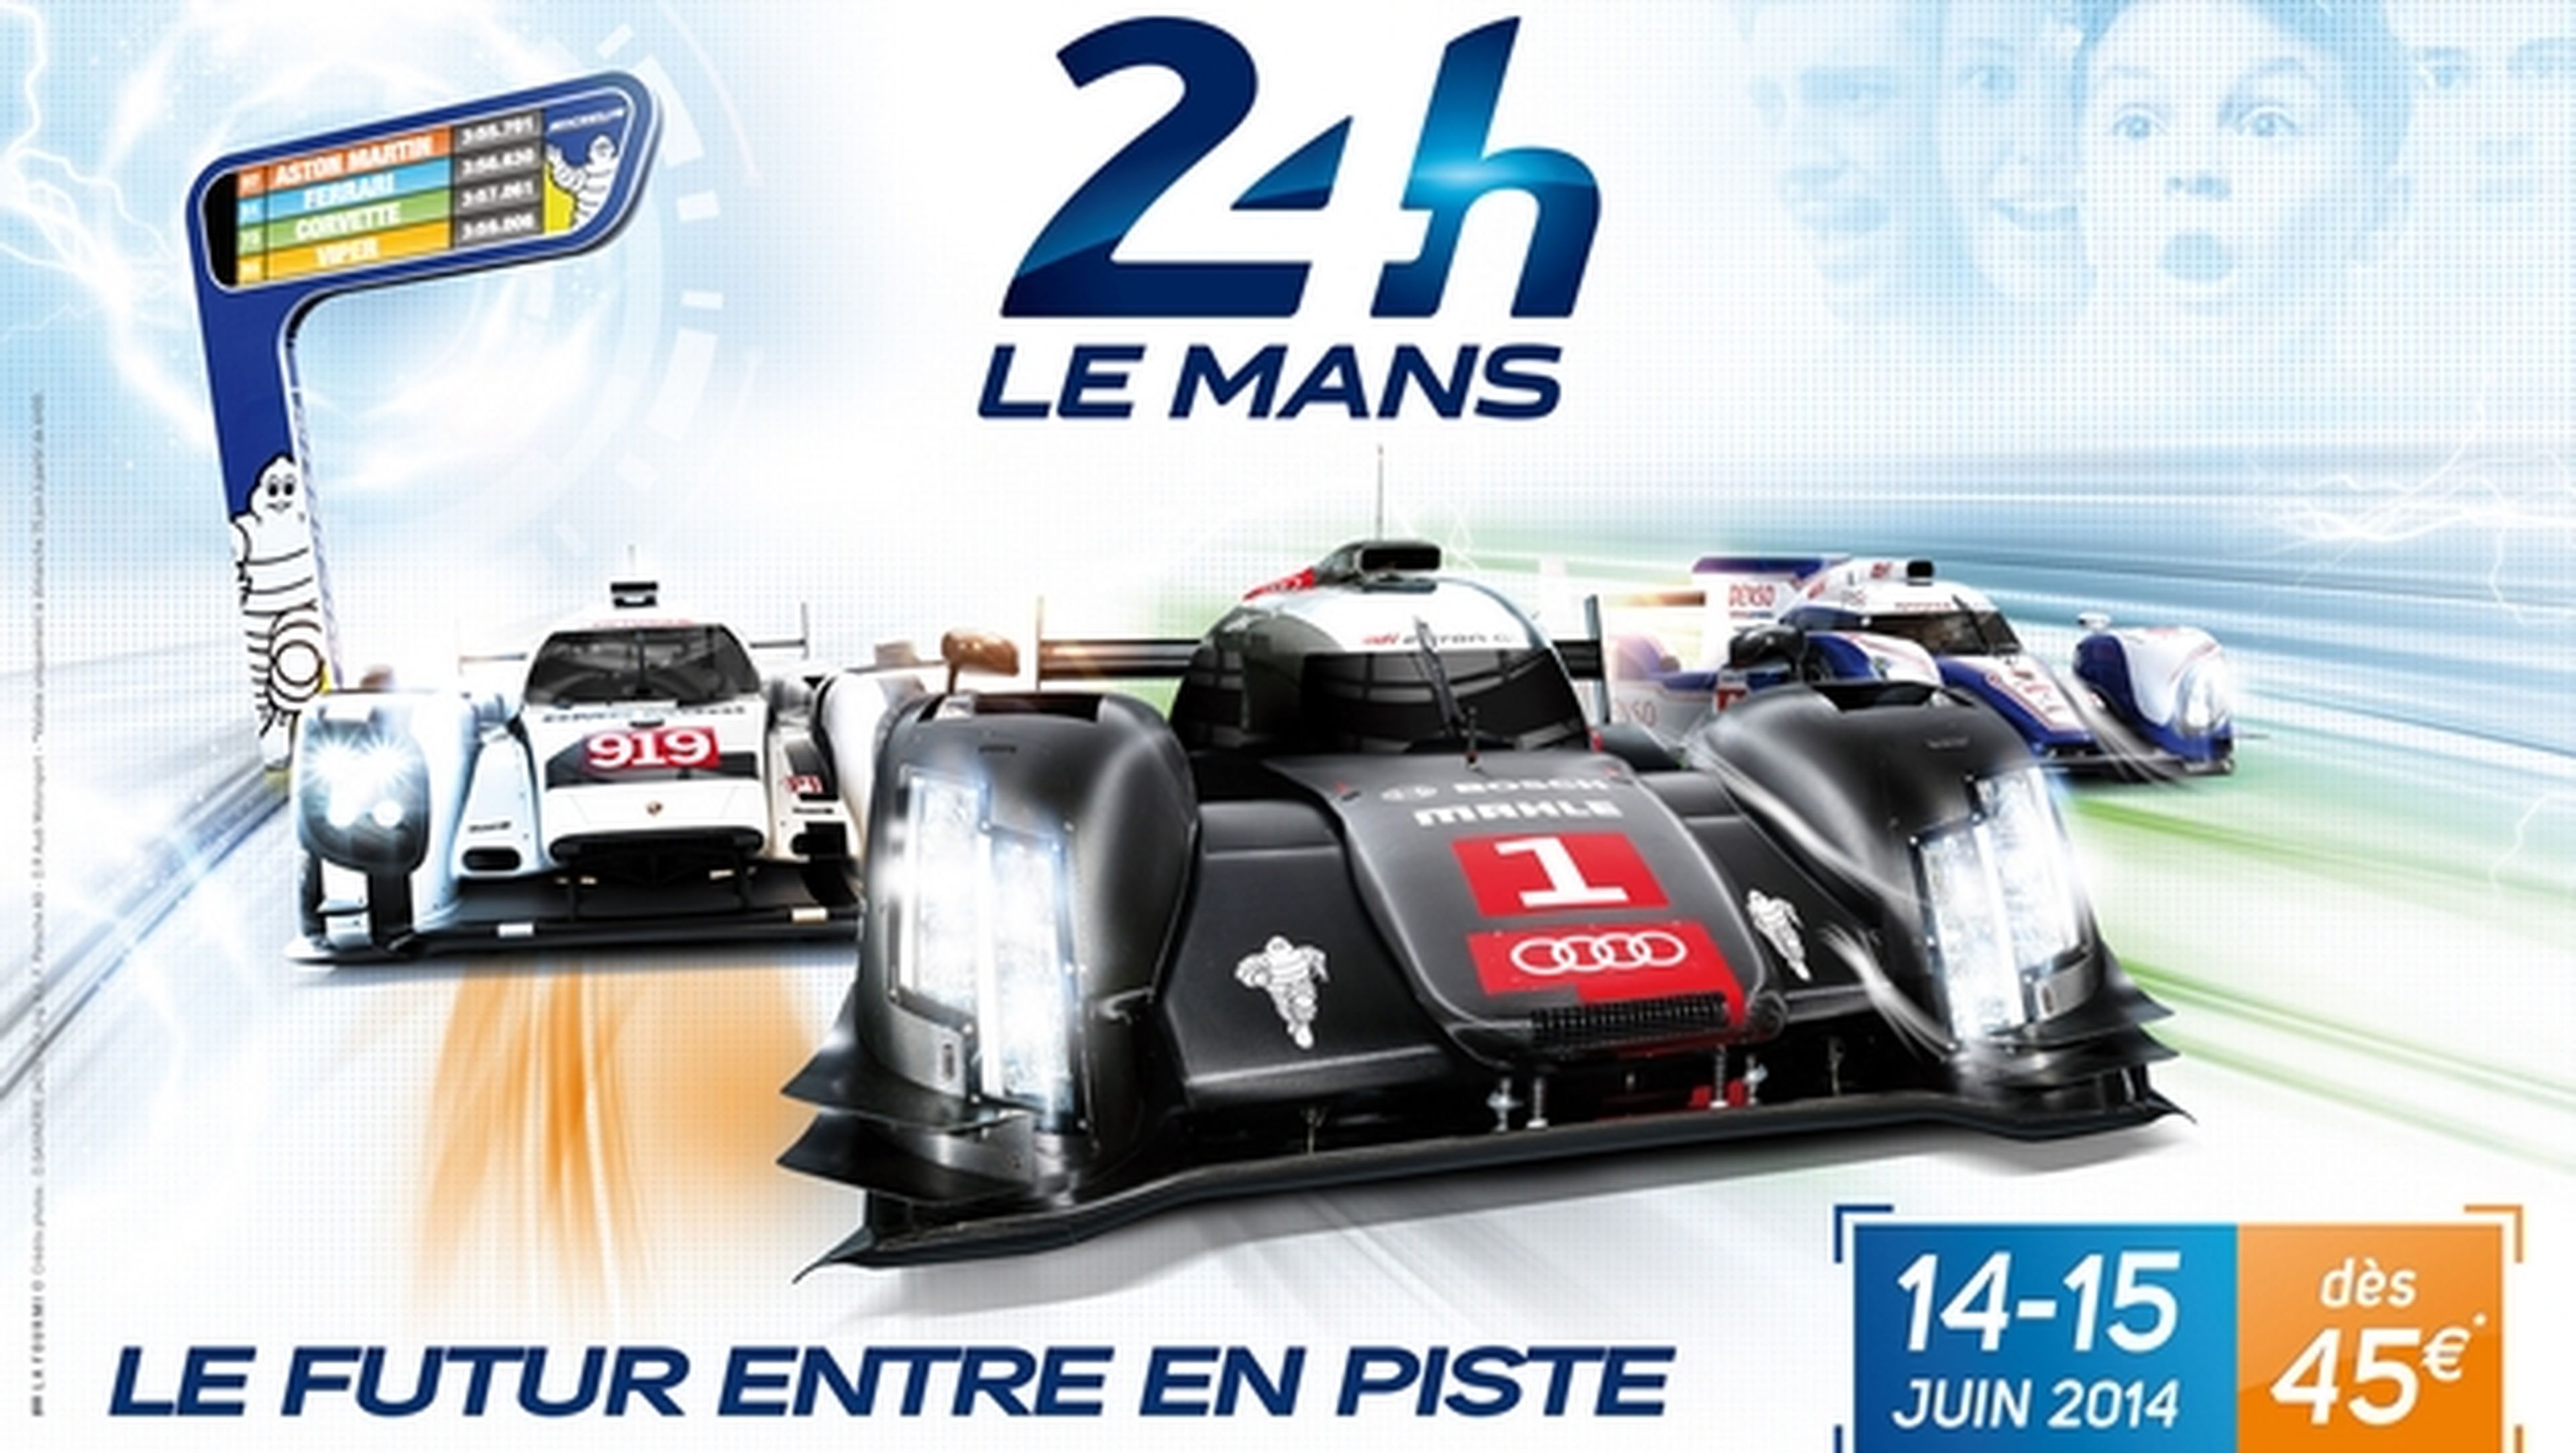 Podrás ver online en directo y gratis las 24 horas de Le Mans 2014 en Autobild.